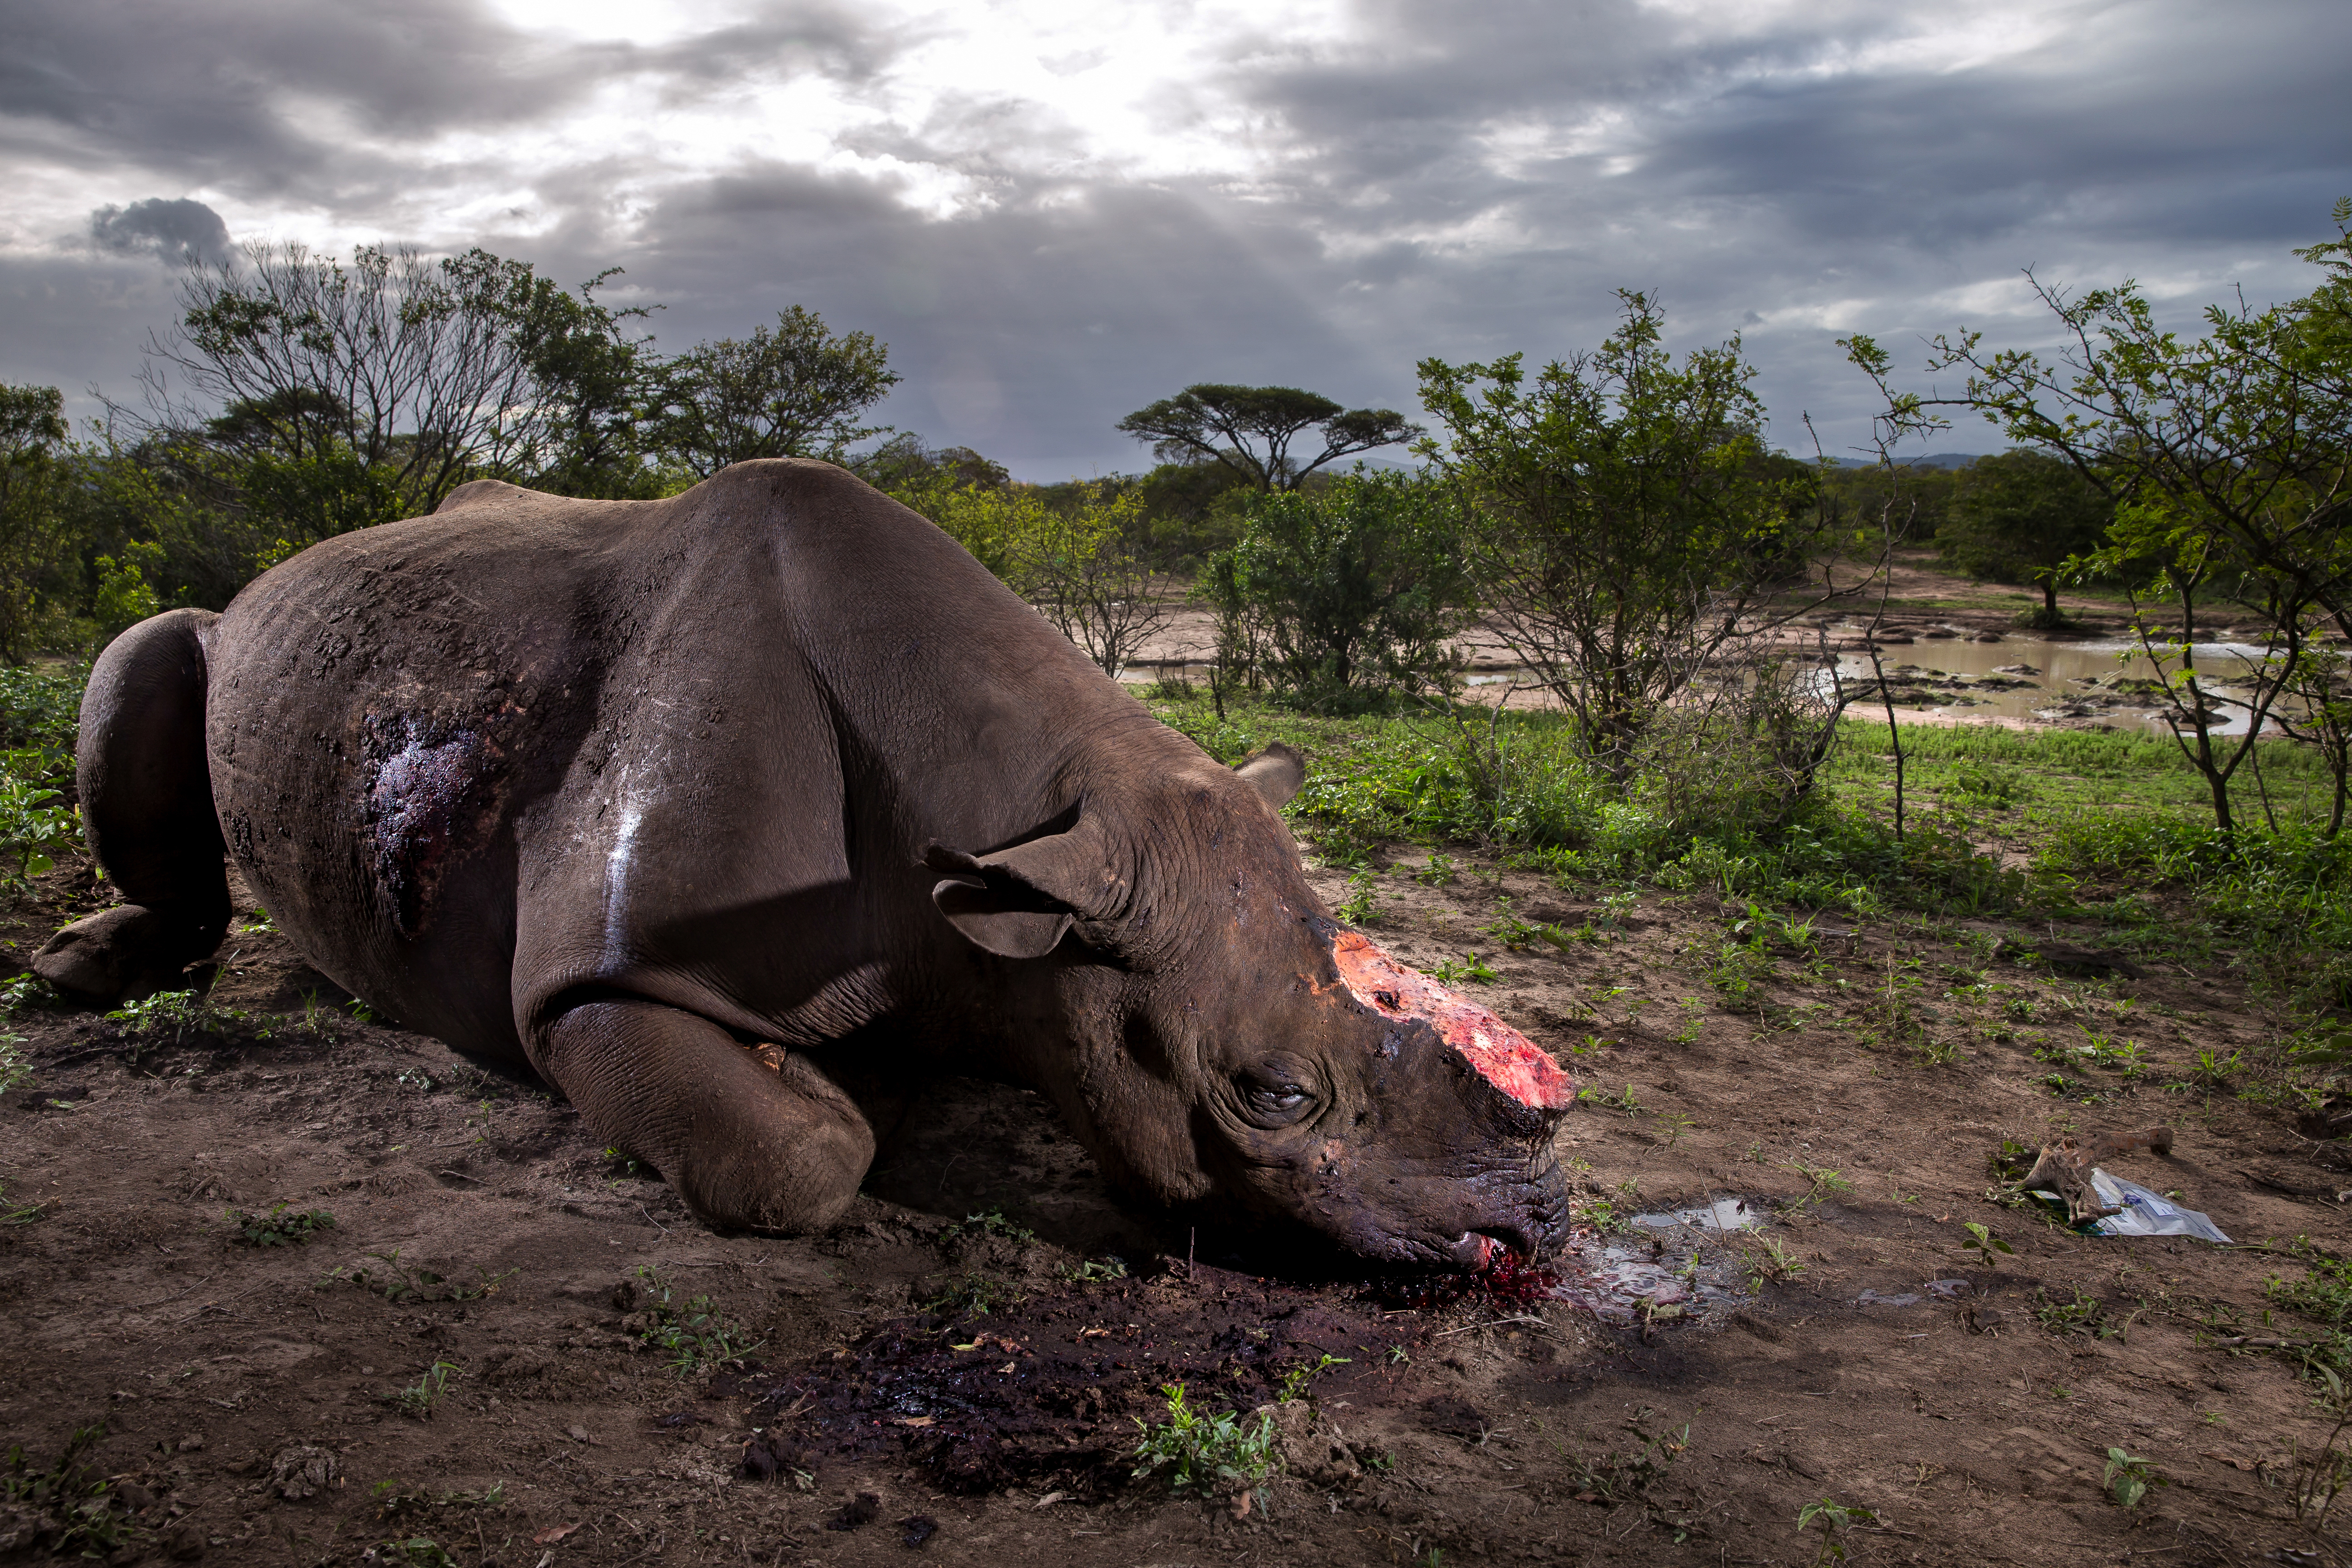 （图说）荷赛获奖作品：南非赫乌姆福洛济保护区，一头黑犀牛被割除犀牛角后死亡。作者：Brent Stirton